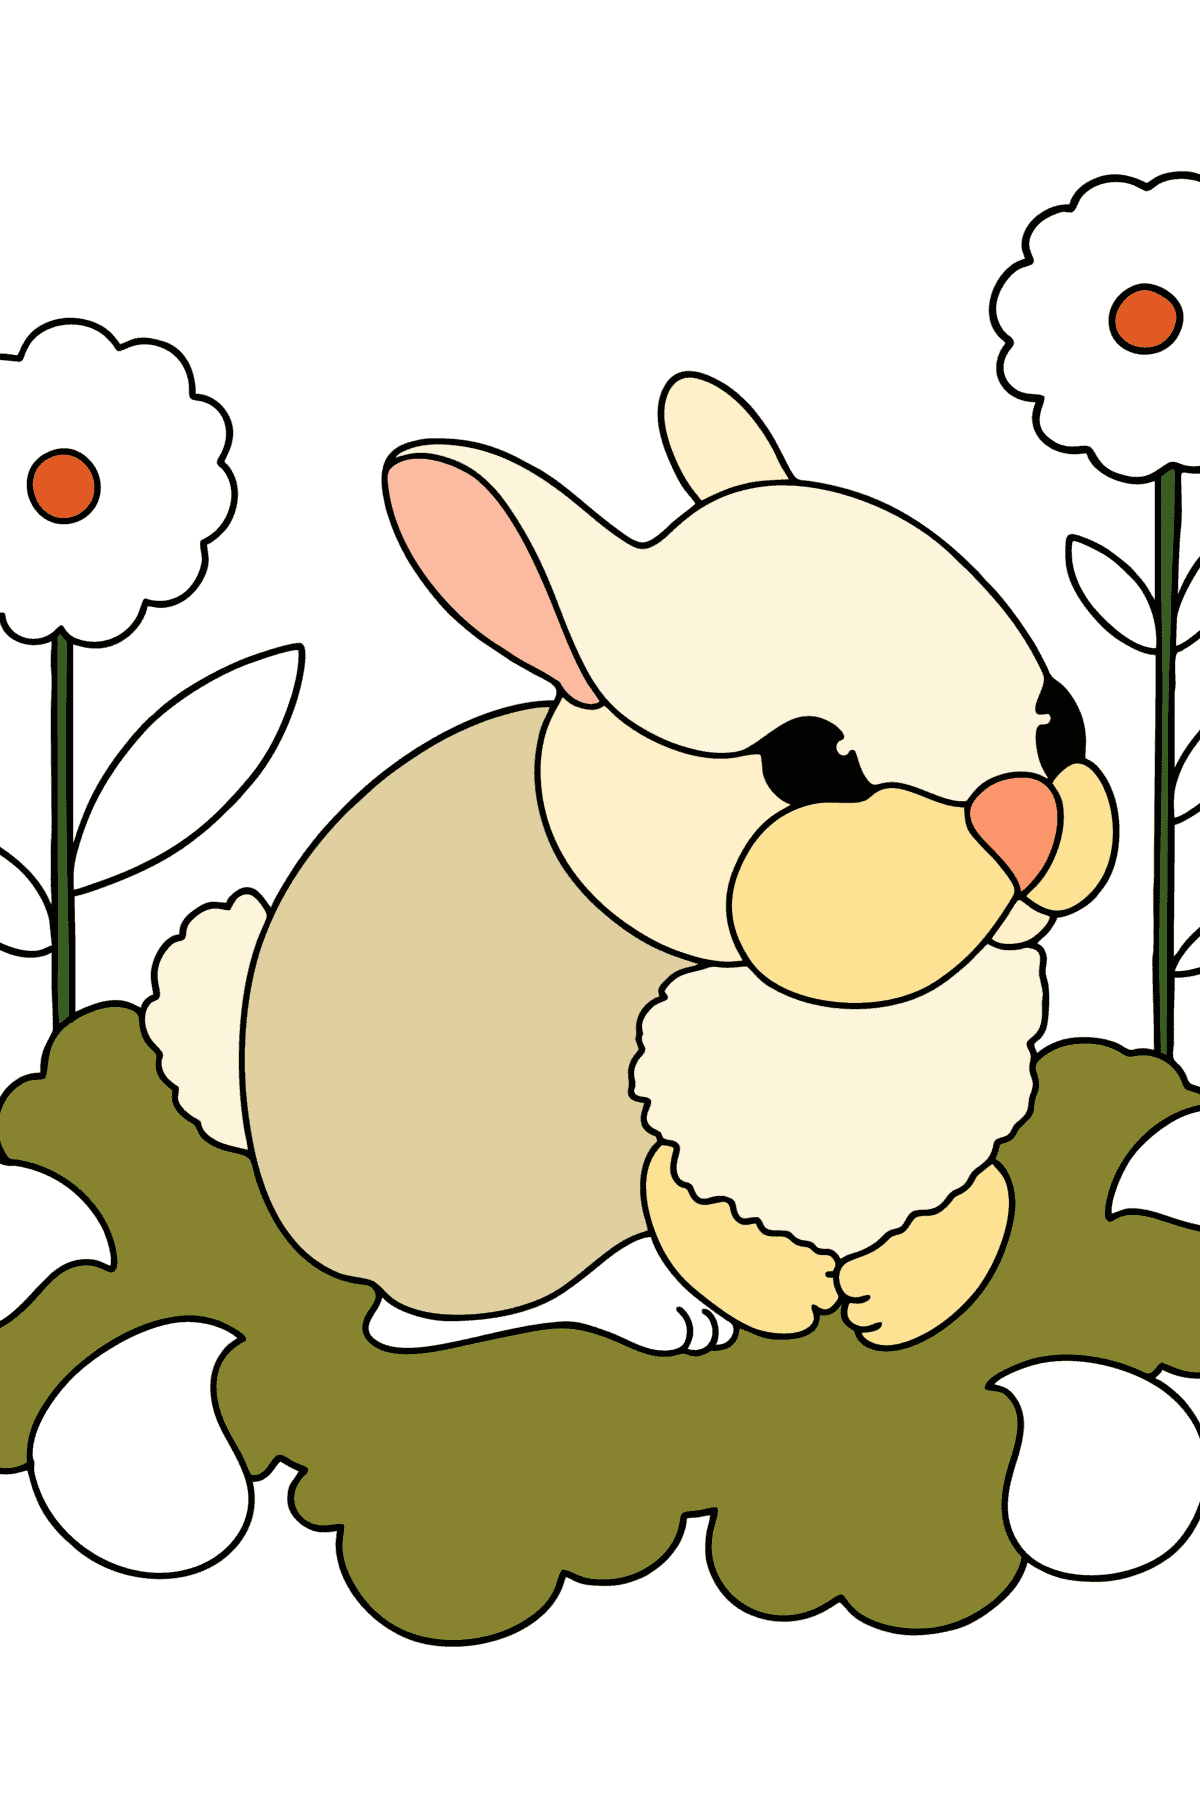 Kleurplaat baby konijn - kleurplaten voor kinderen